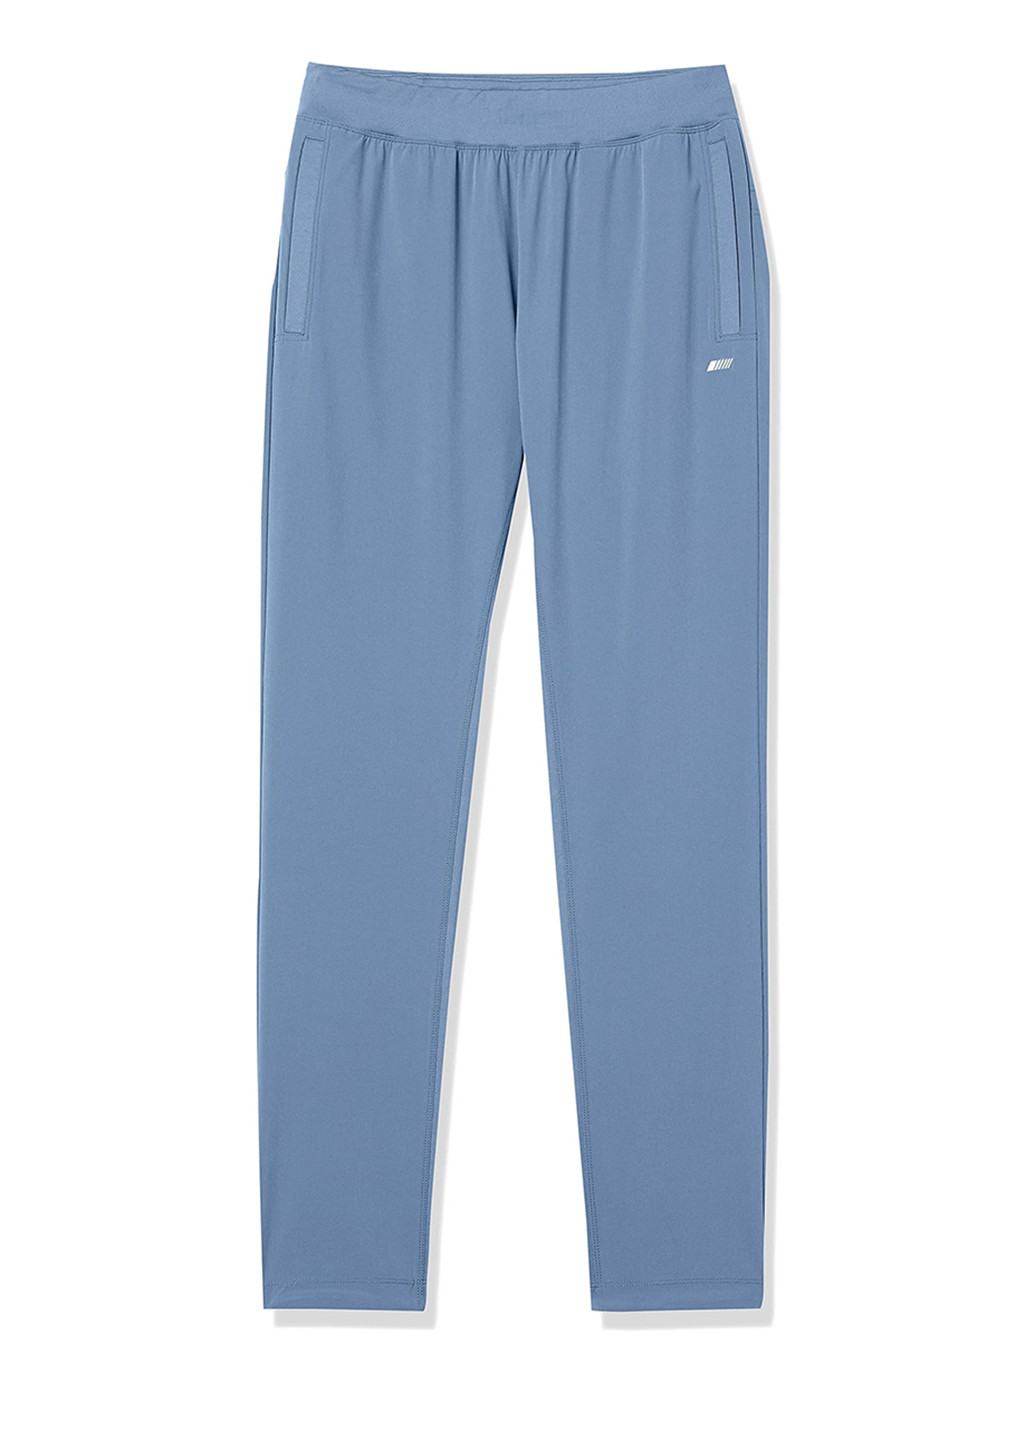 Серо-голубые спортивные демисезонные зауженные брюки Amazon Essentials